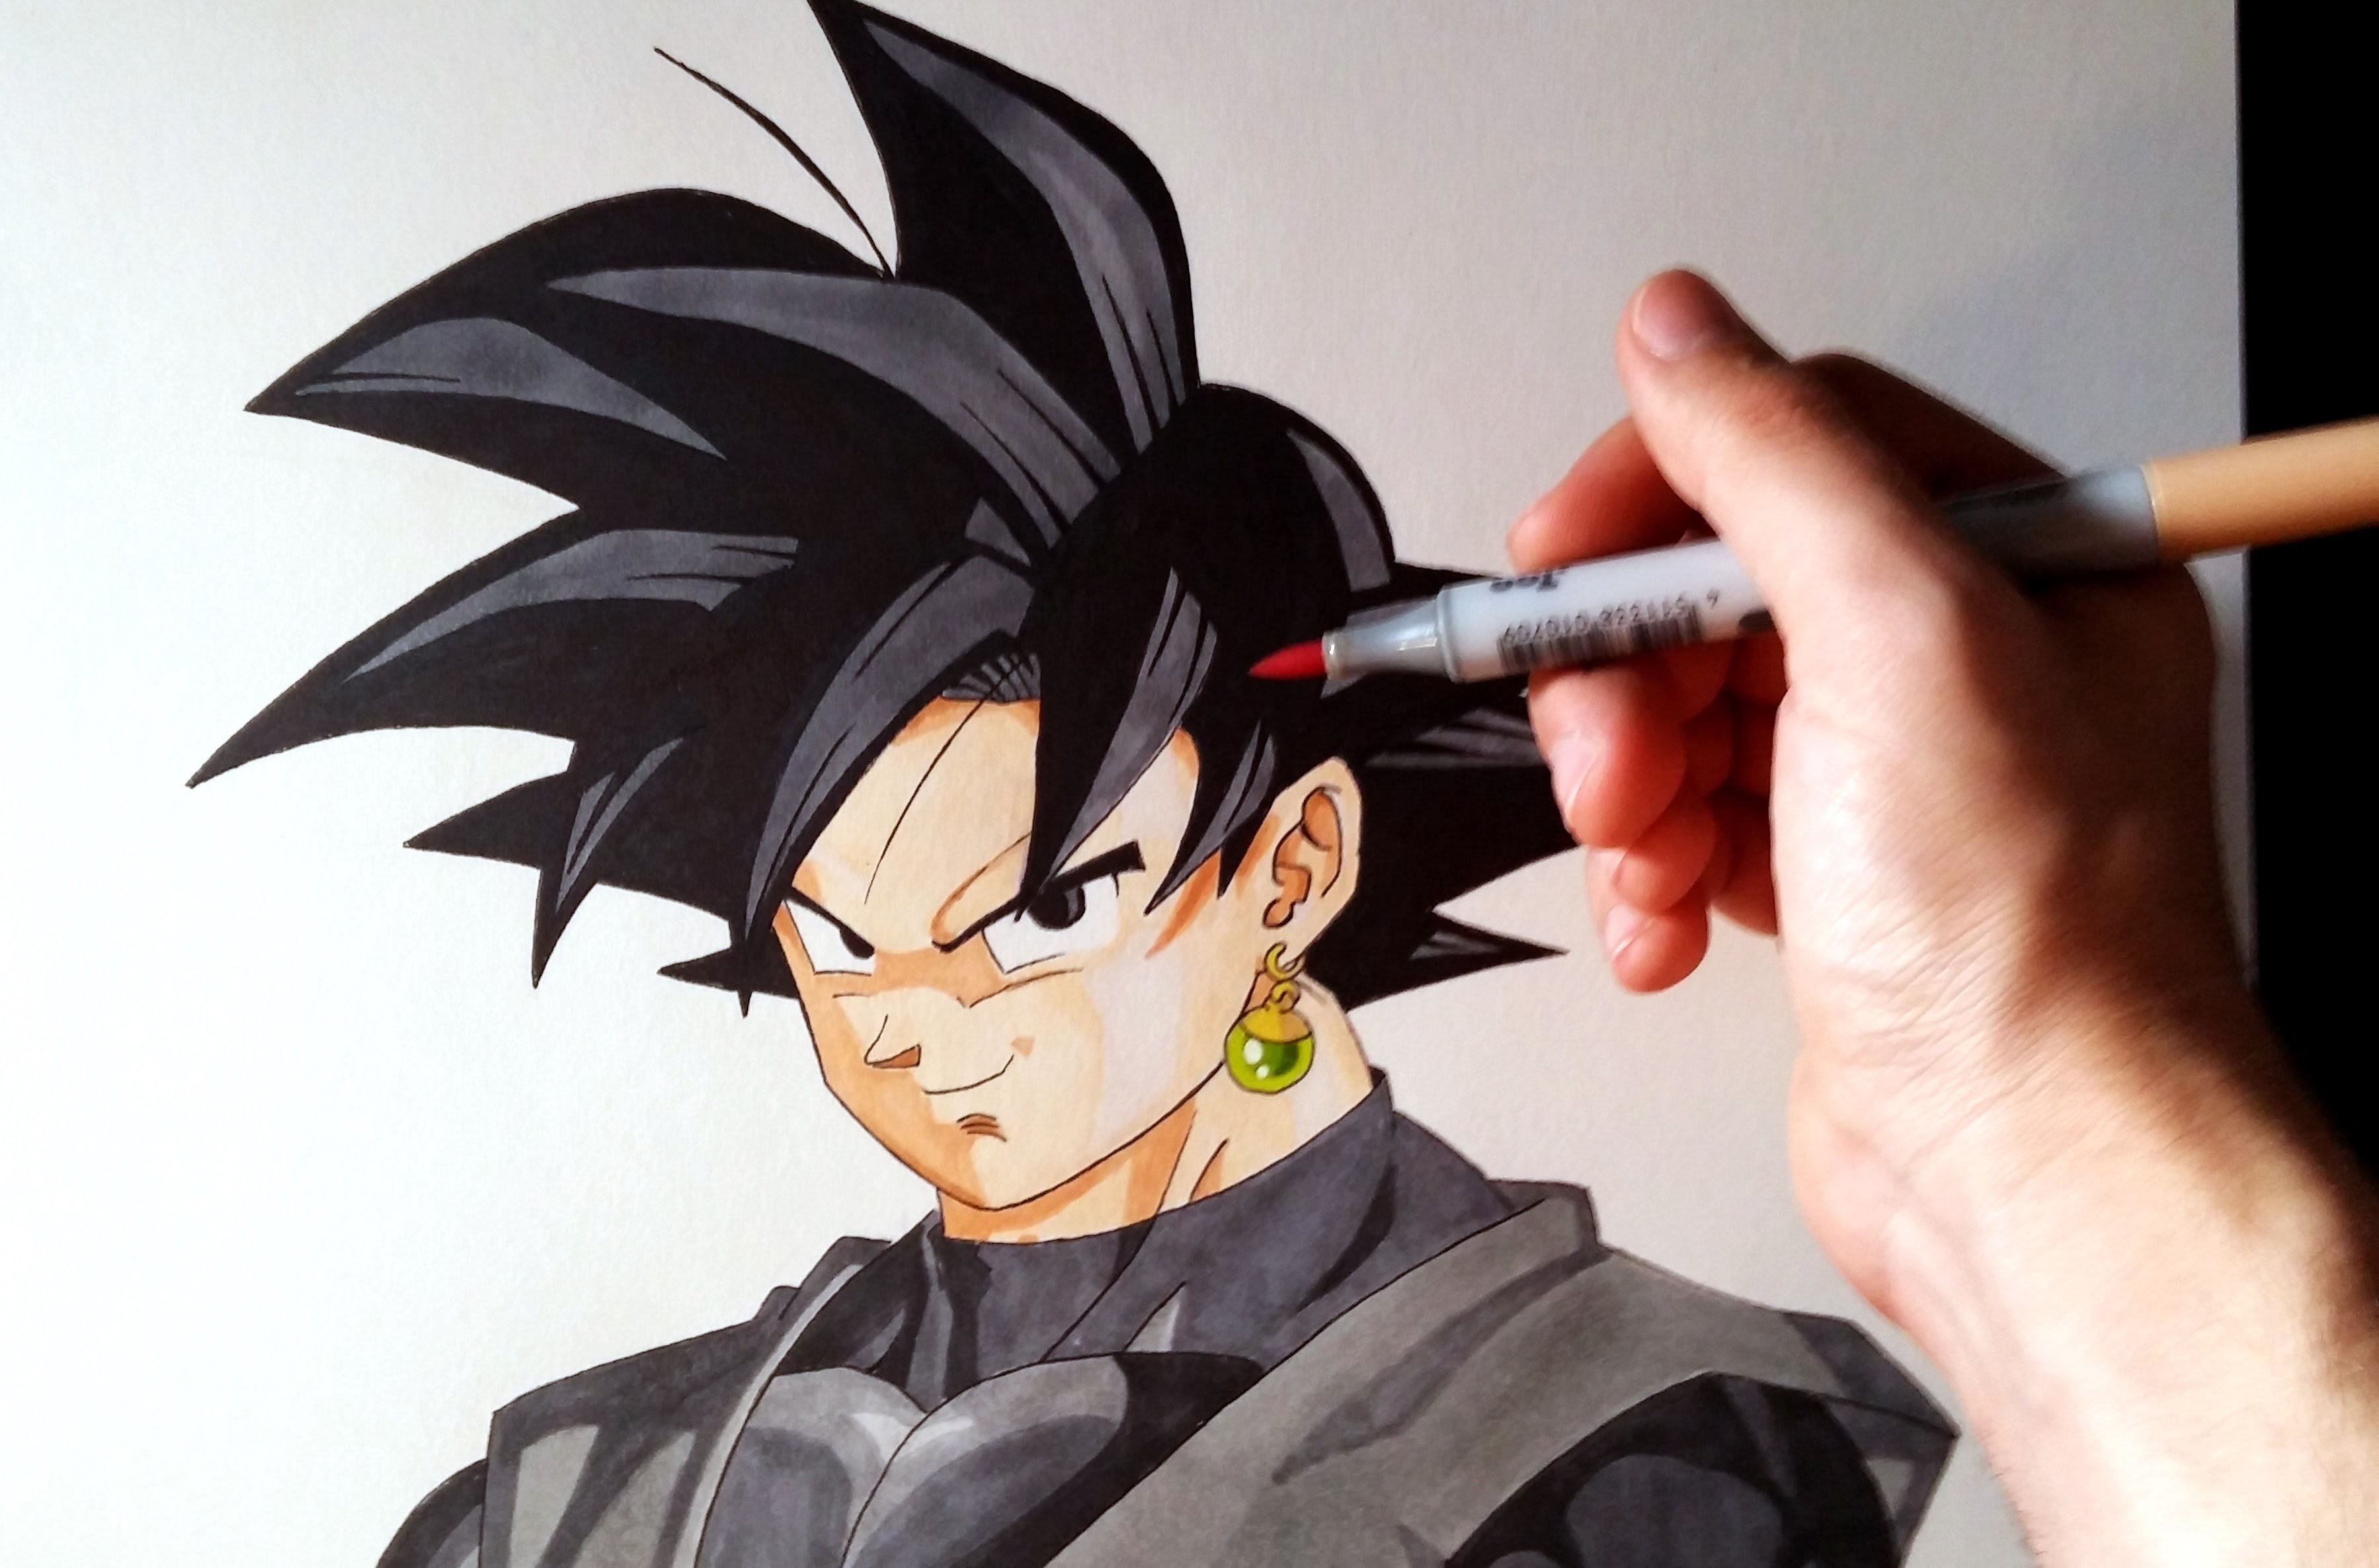 Cómo dibujar a Goku Black de Dragon Ball Super | How to draw Goku Black DBS | ArteMaster